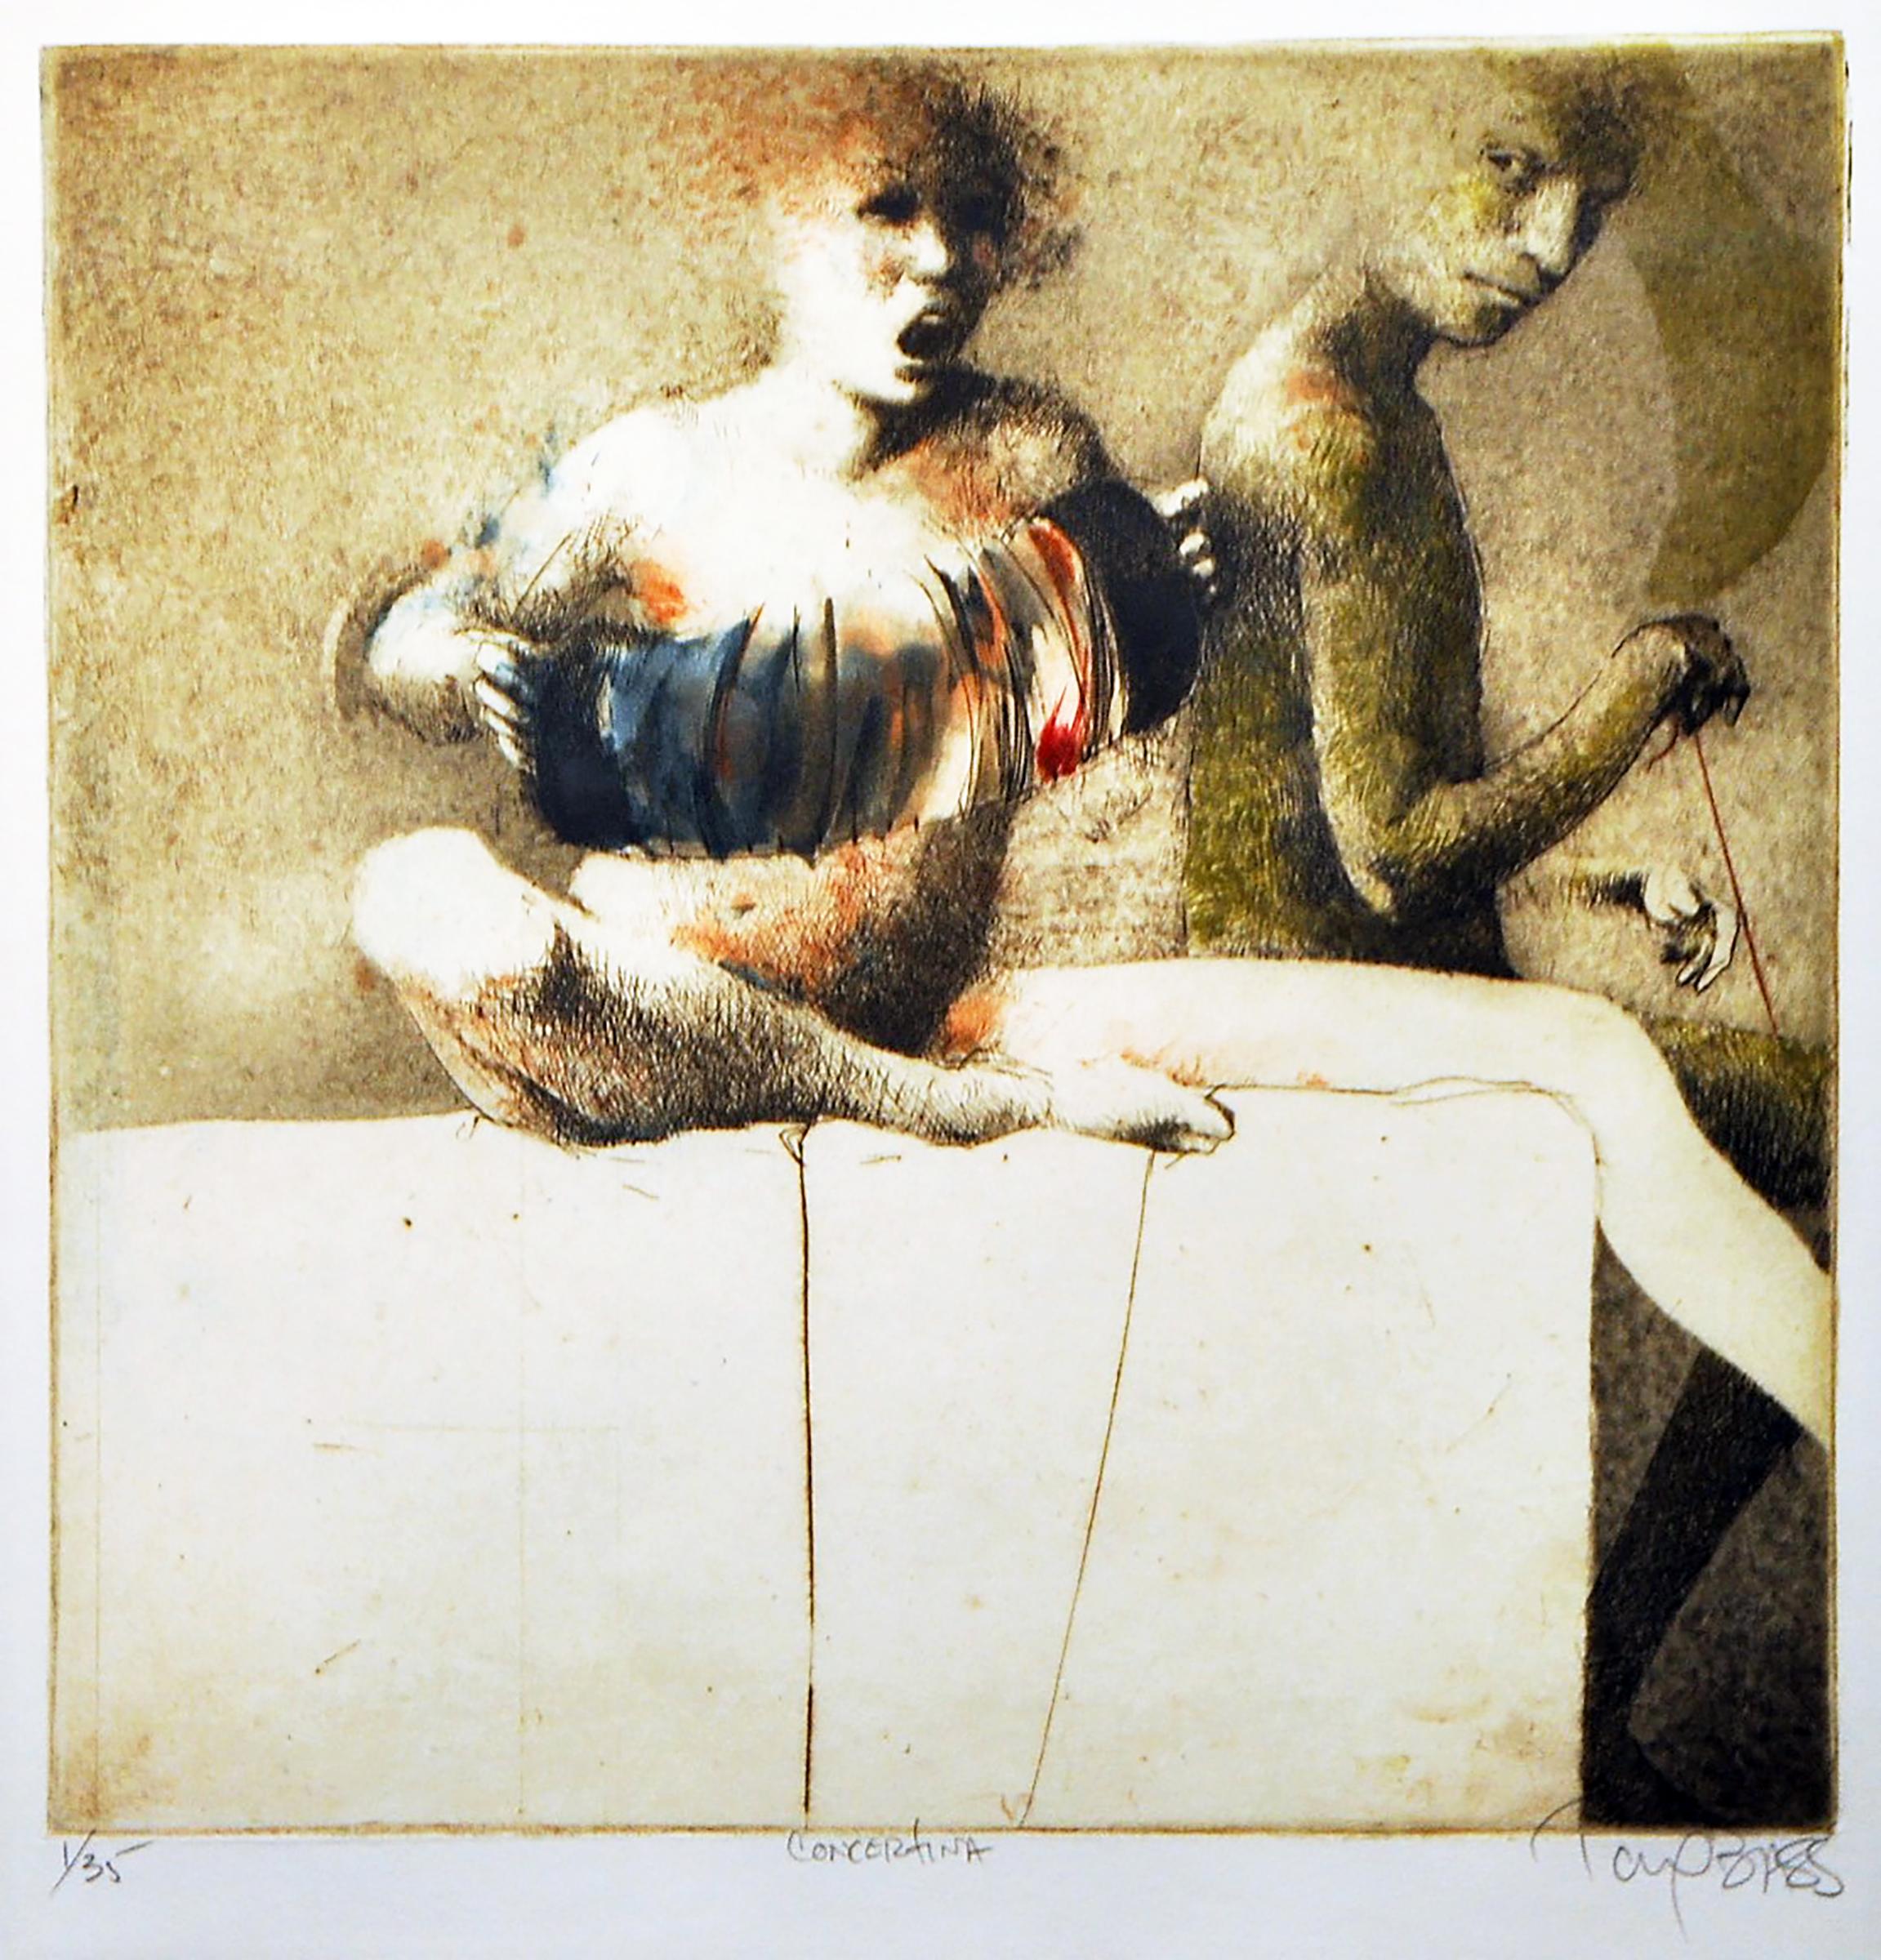 "Concertina" des zeitgenössischen amerikanischen Künstlers Tony Bass ist eine Radierung auf Papier, die zwei menschliche Figuren darstellt: eine sitzende Frau, die singt und etwas zu spielen scheint, was ein Akkordeon zu sein scheint, während eine